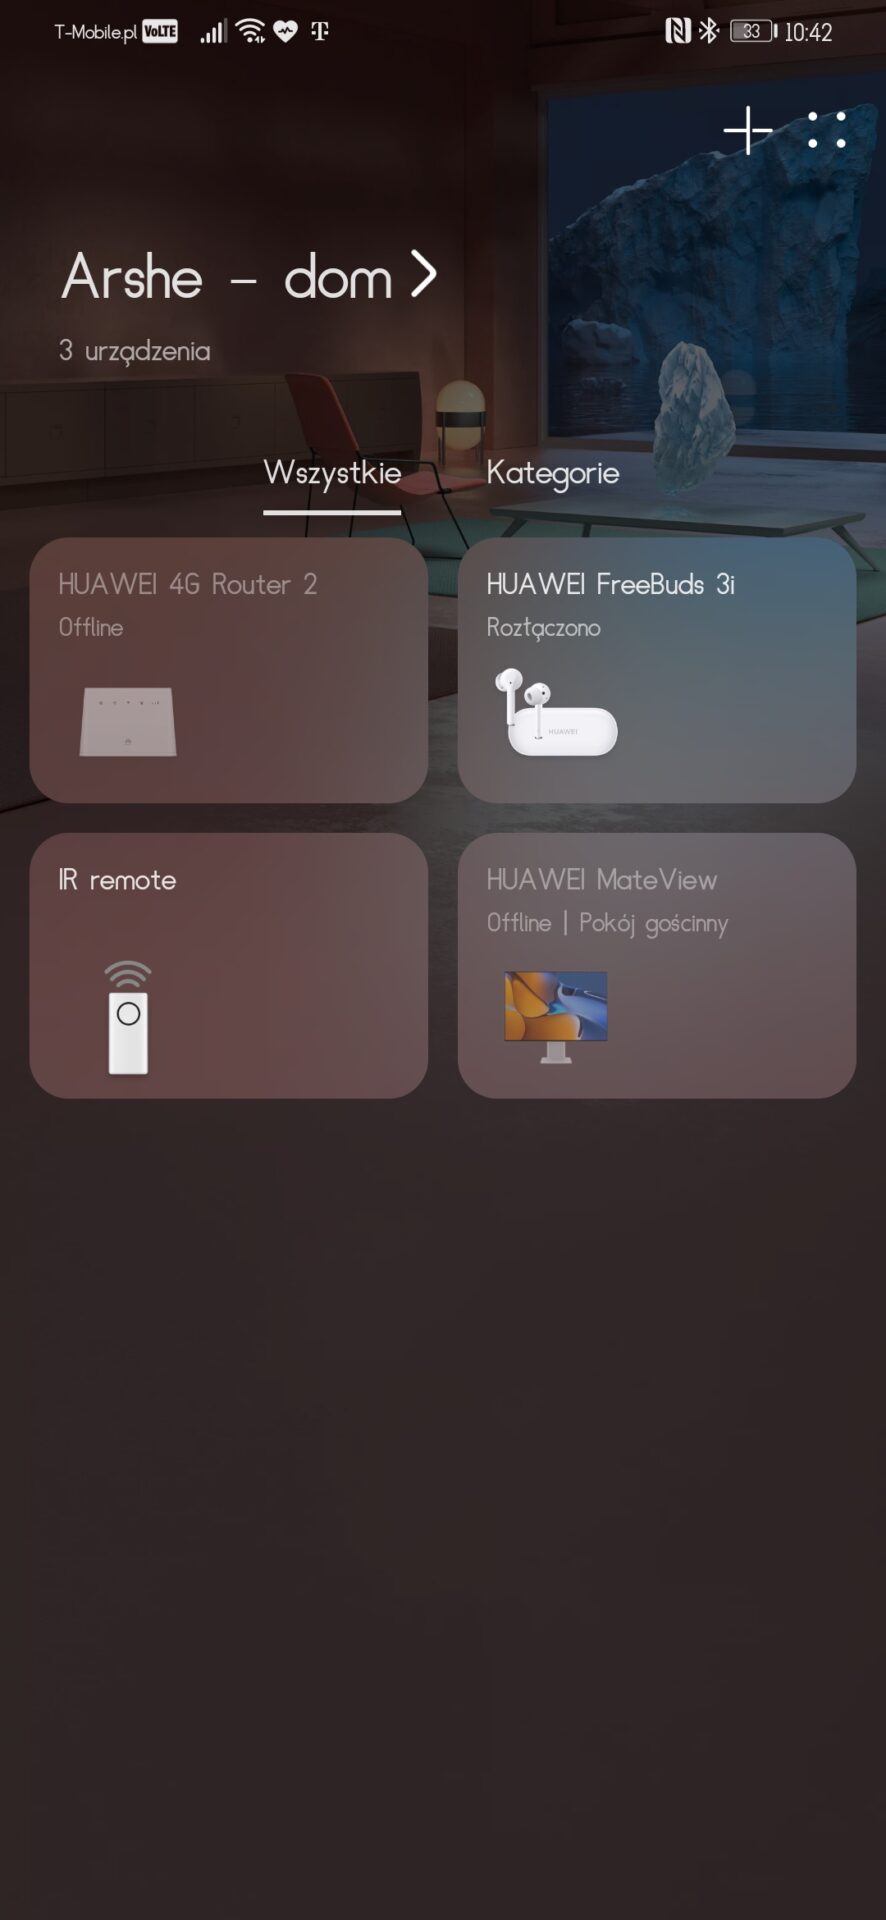 Huawei MateView - nietypowe proporcje, nietypowa praca?! - recenzja